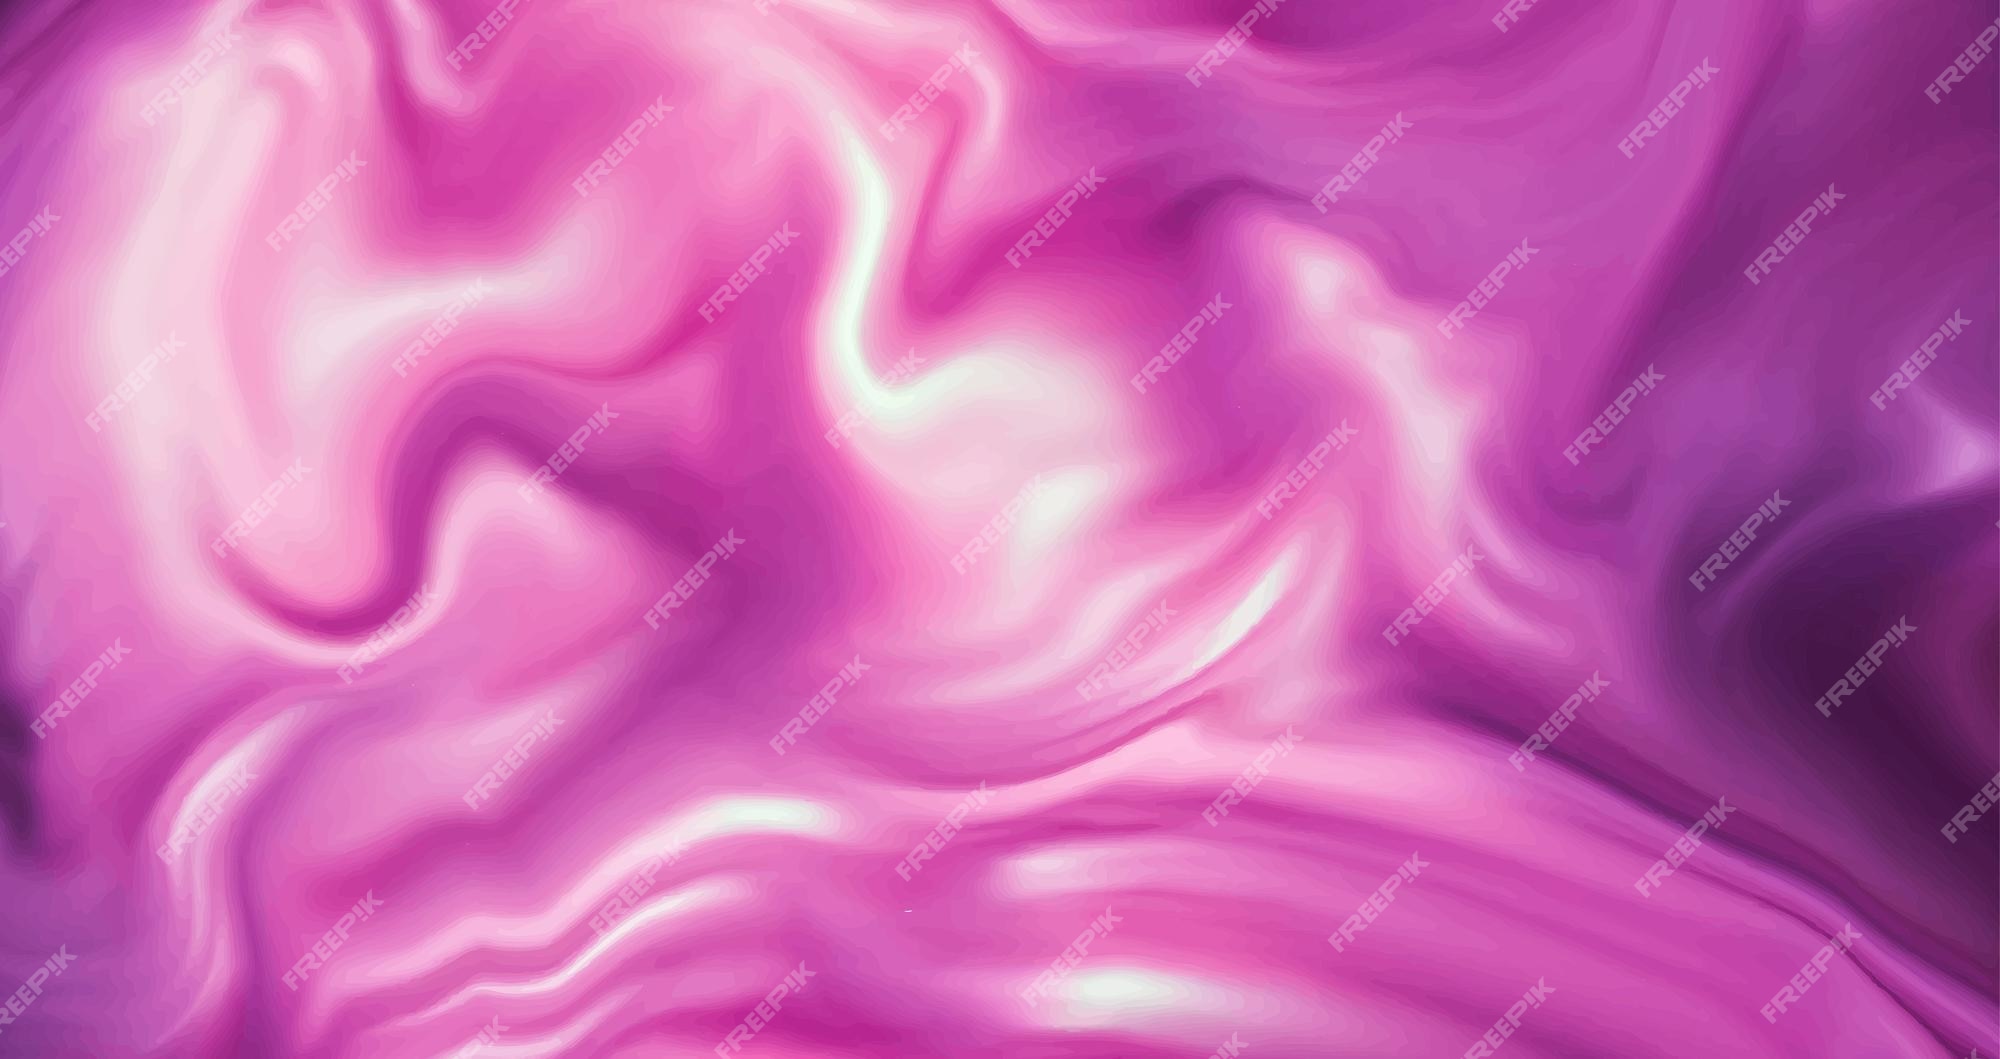 Nền động chất lỏng (liquid marble background): Tham gia trong một trải nghiệm siêu thực với các hình nền động chất lỏng sáng tạo của chúng tôi. Những hình ảnh đẹp và độc đáo này sẽ đưa bạn đến một thế giới mới, nơi mà sự cân bằng giữa màu sắc, ánh sáng, và chất lỏng sẽ làm cho bạn mê mẩn.